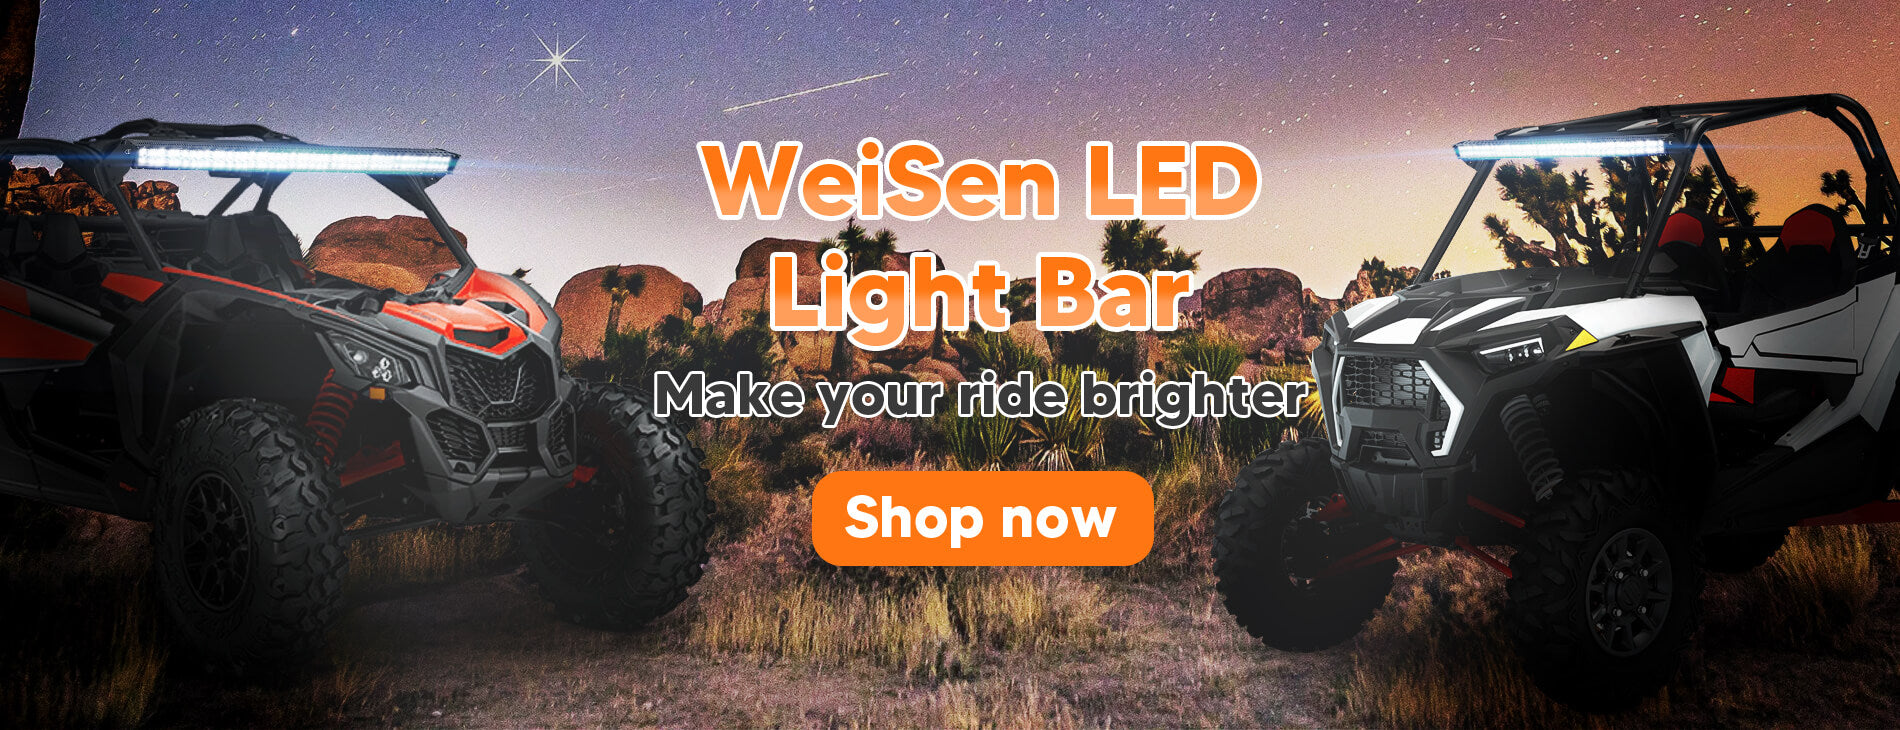 Weisen led light bar